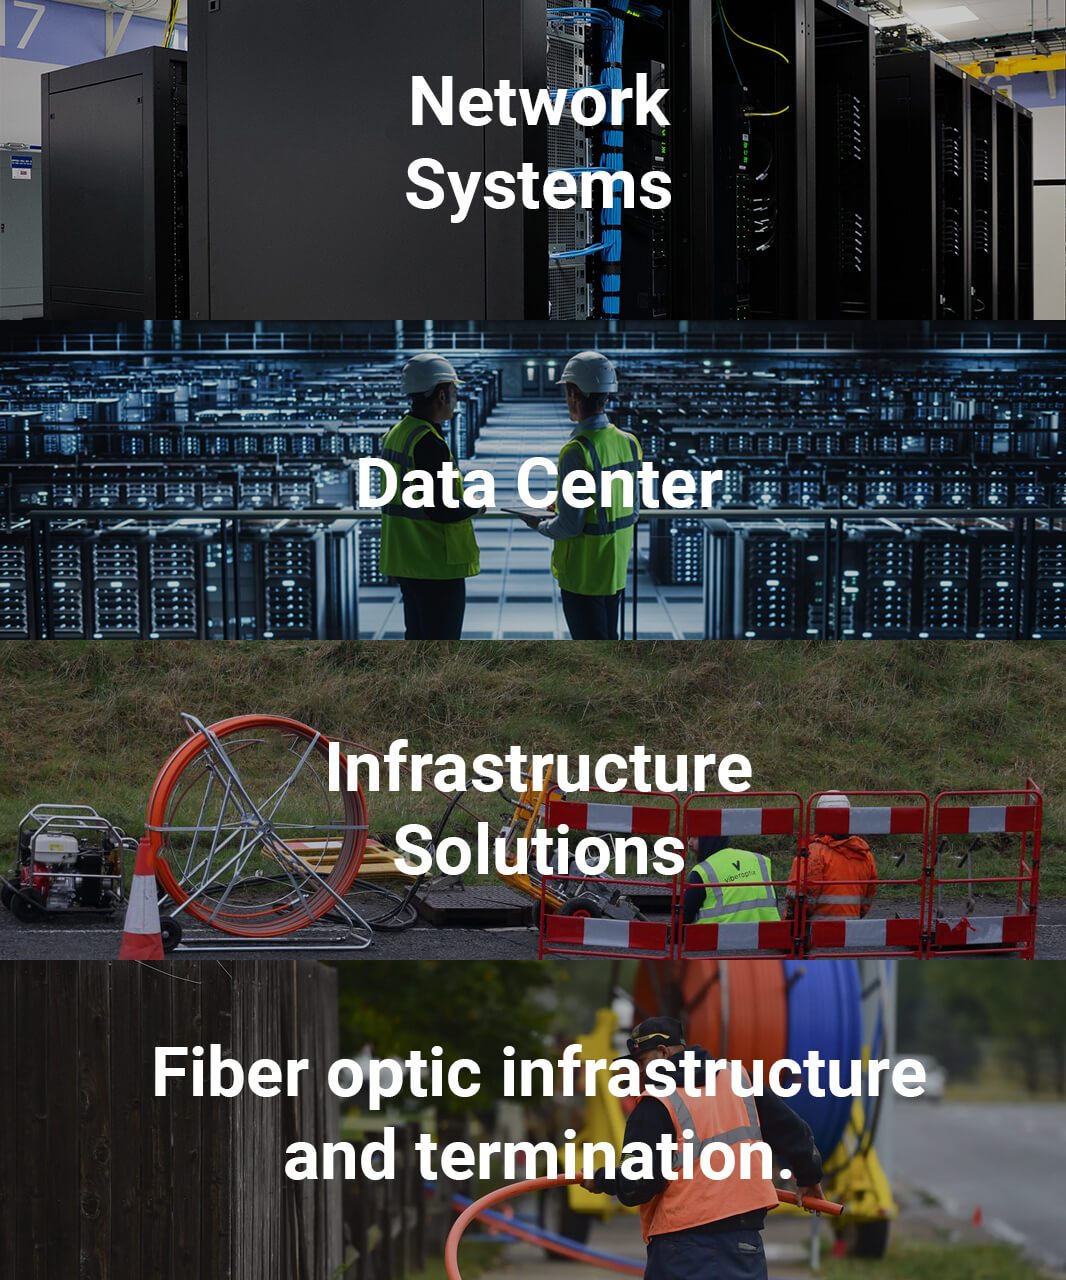 Ortadoğu Telecommunication Fiber Optik Altyapı Sonlandırma, Alt Yapı Çözümleri, Data Center, Ağ (Network) Sistemleri